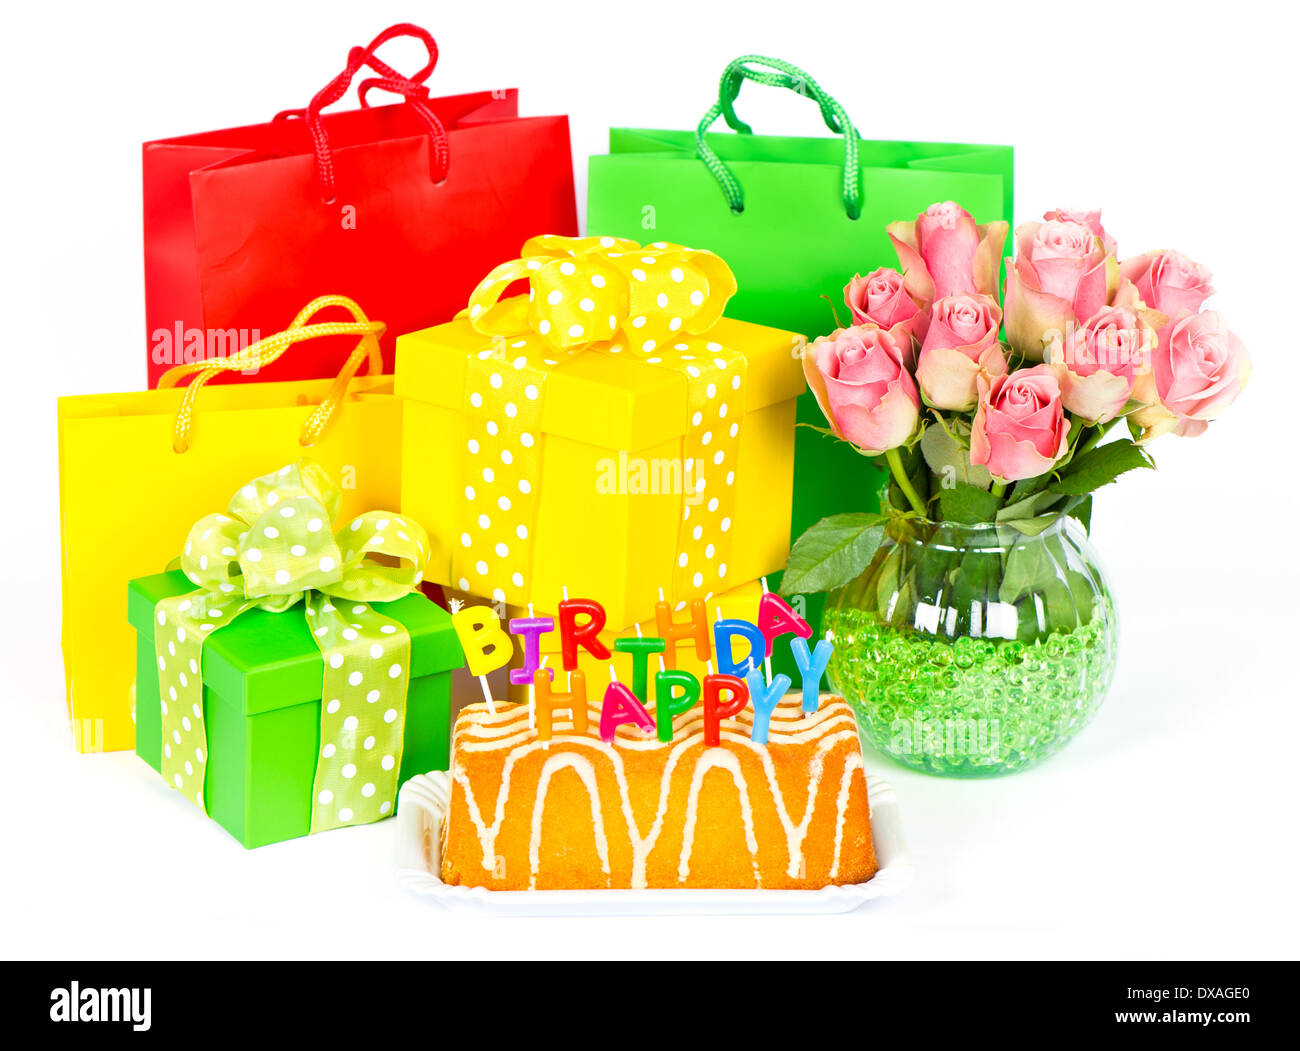 Geburtstagstorte mit Buchstaben-Kerzen, Blumen und Geschenke auf weißem Hintergrund Stockfoto